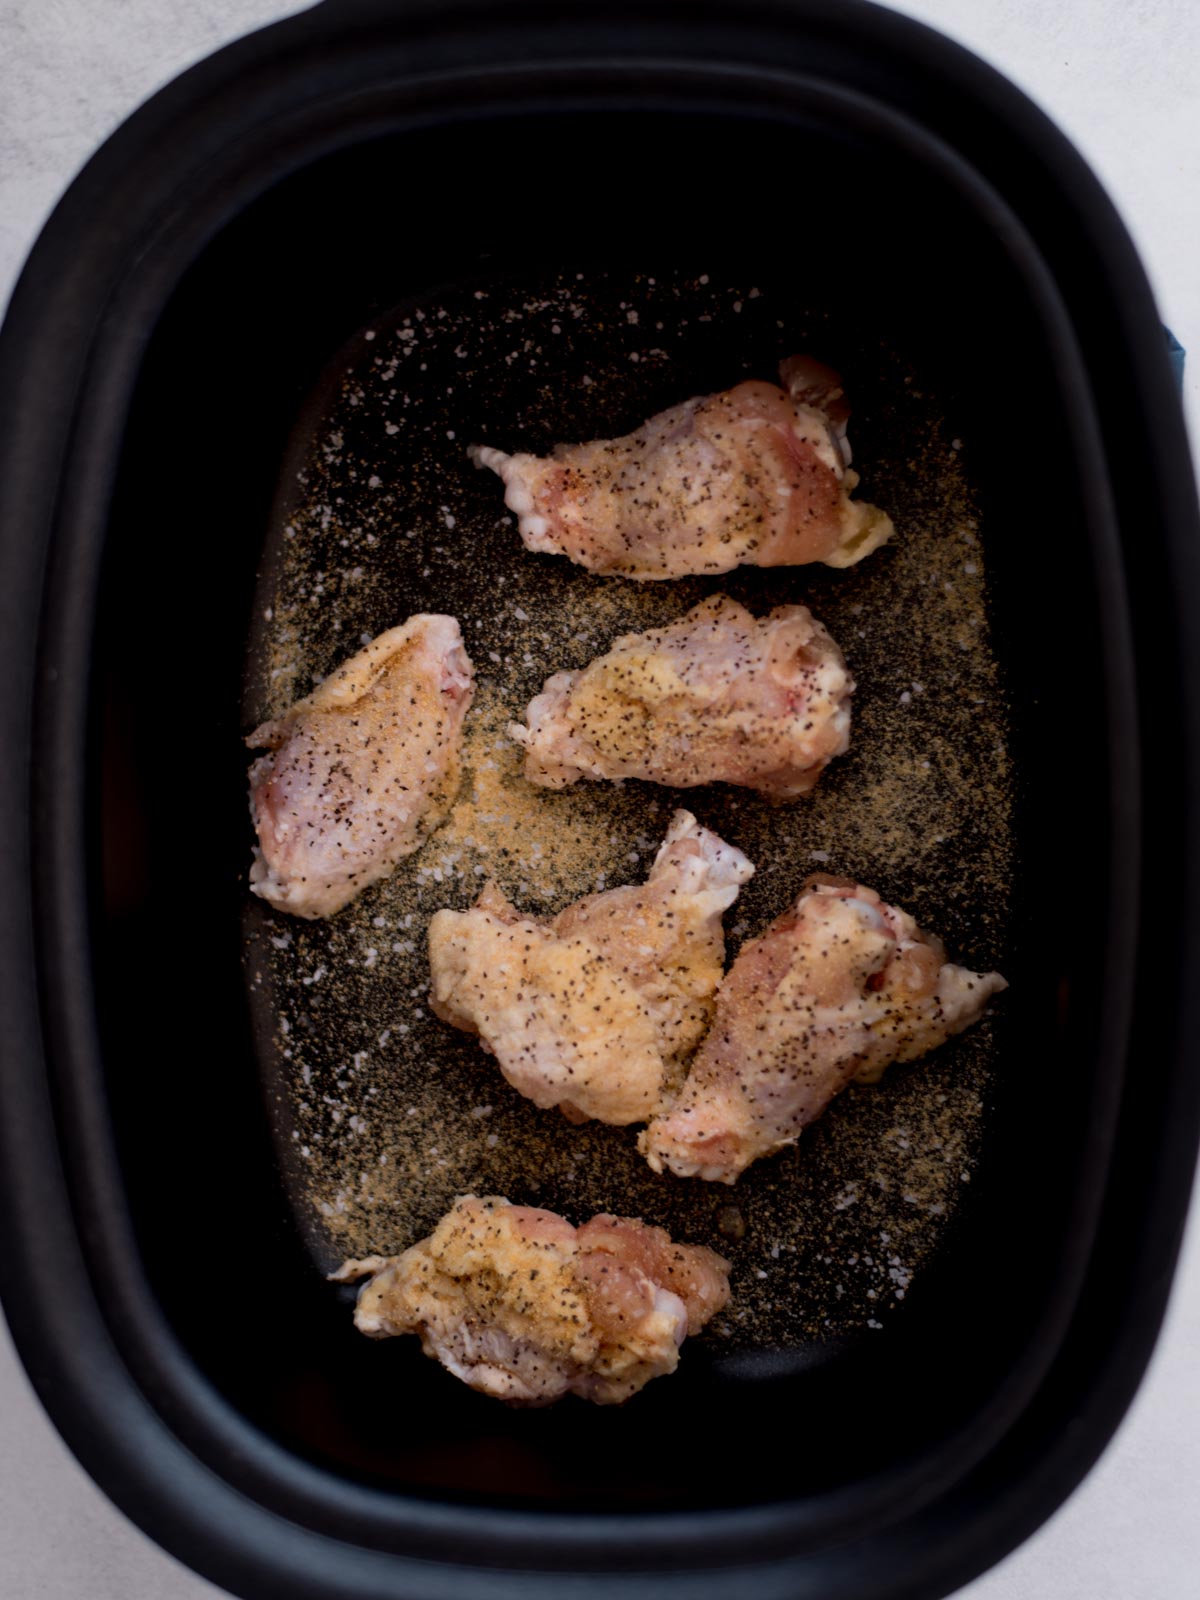 Seasoned raw chicken wings inside a crockpot.